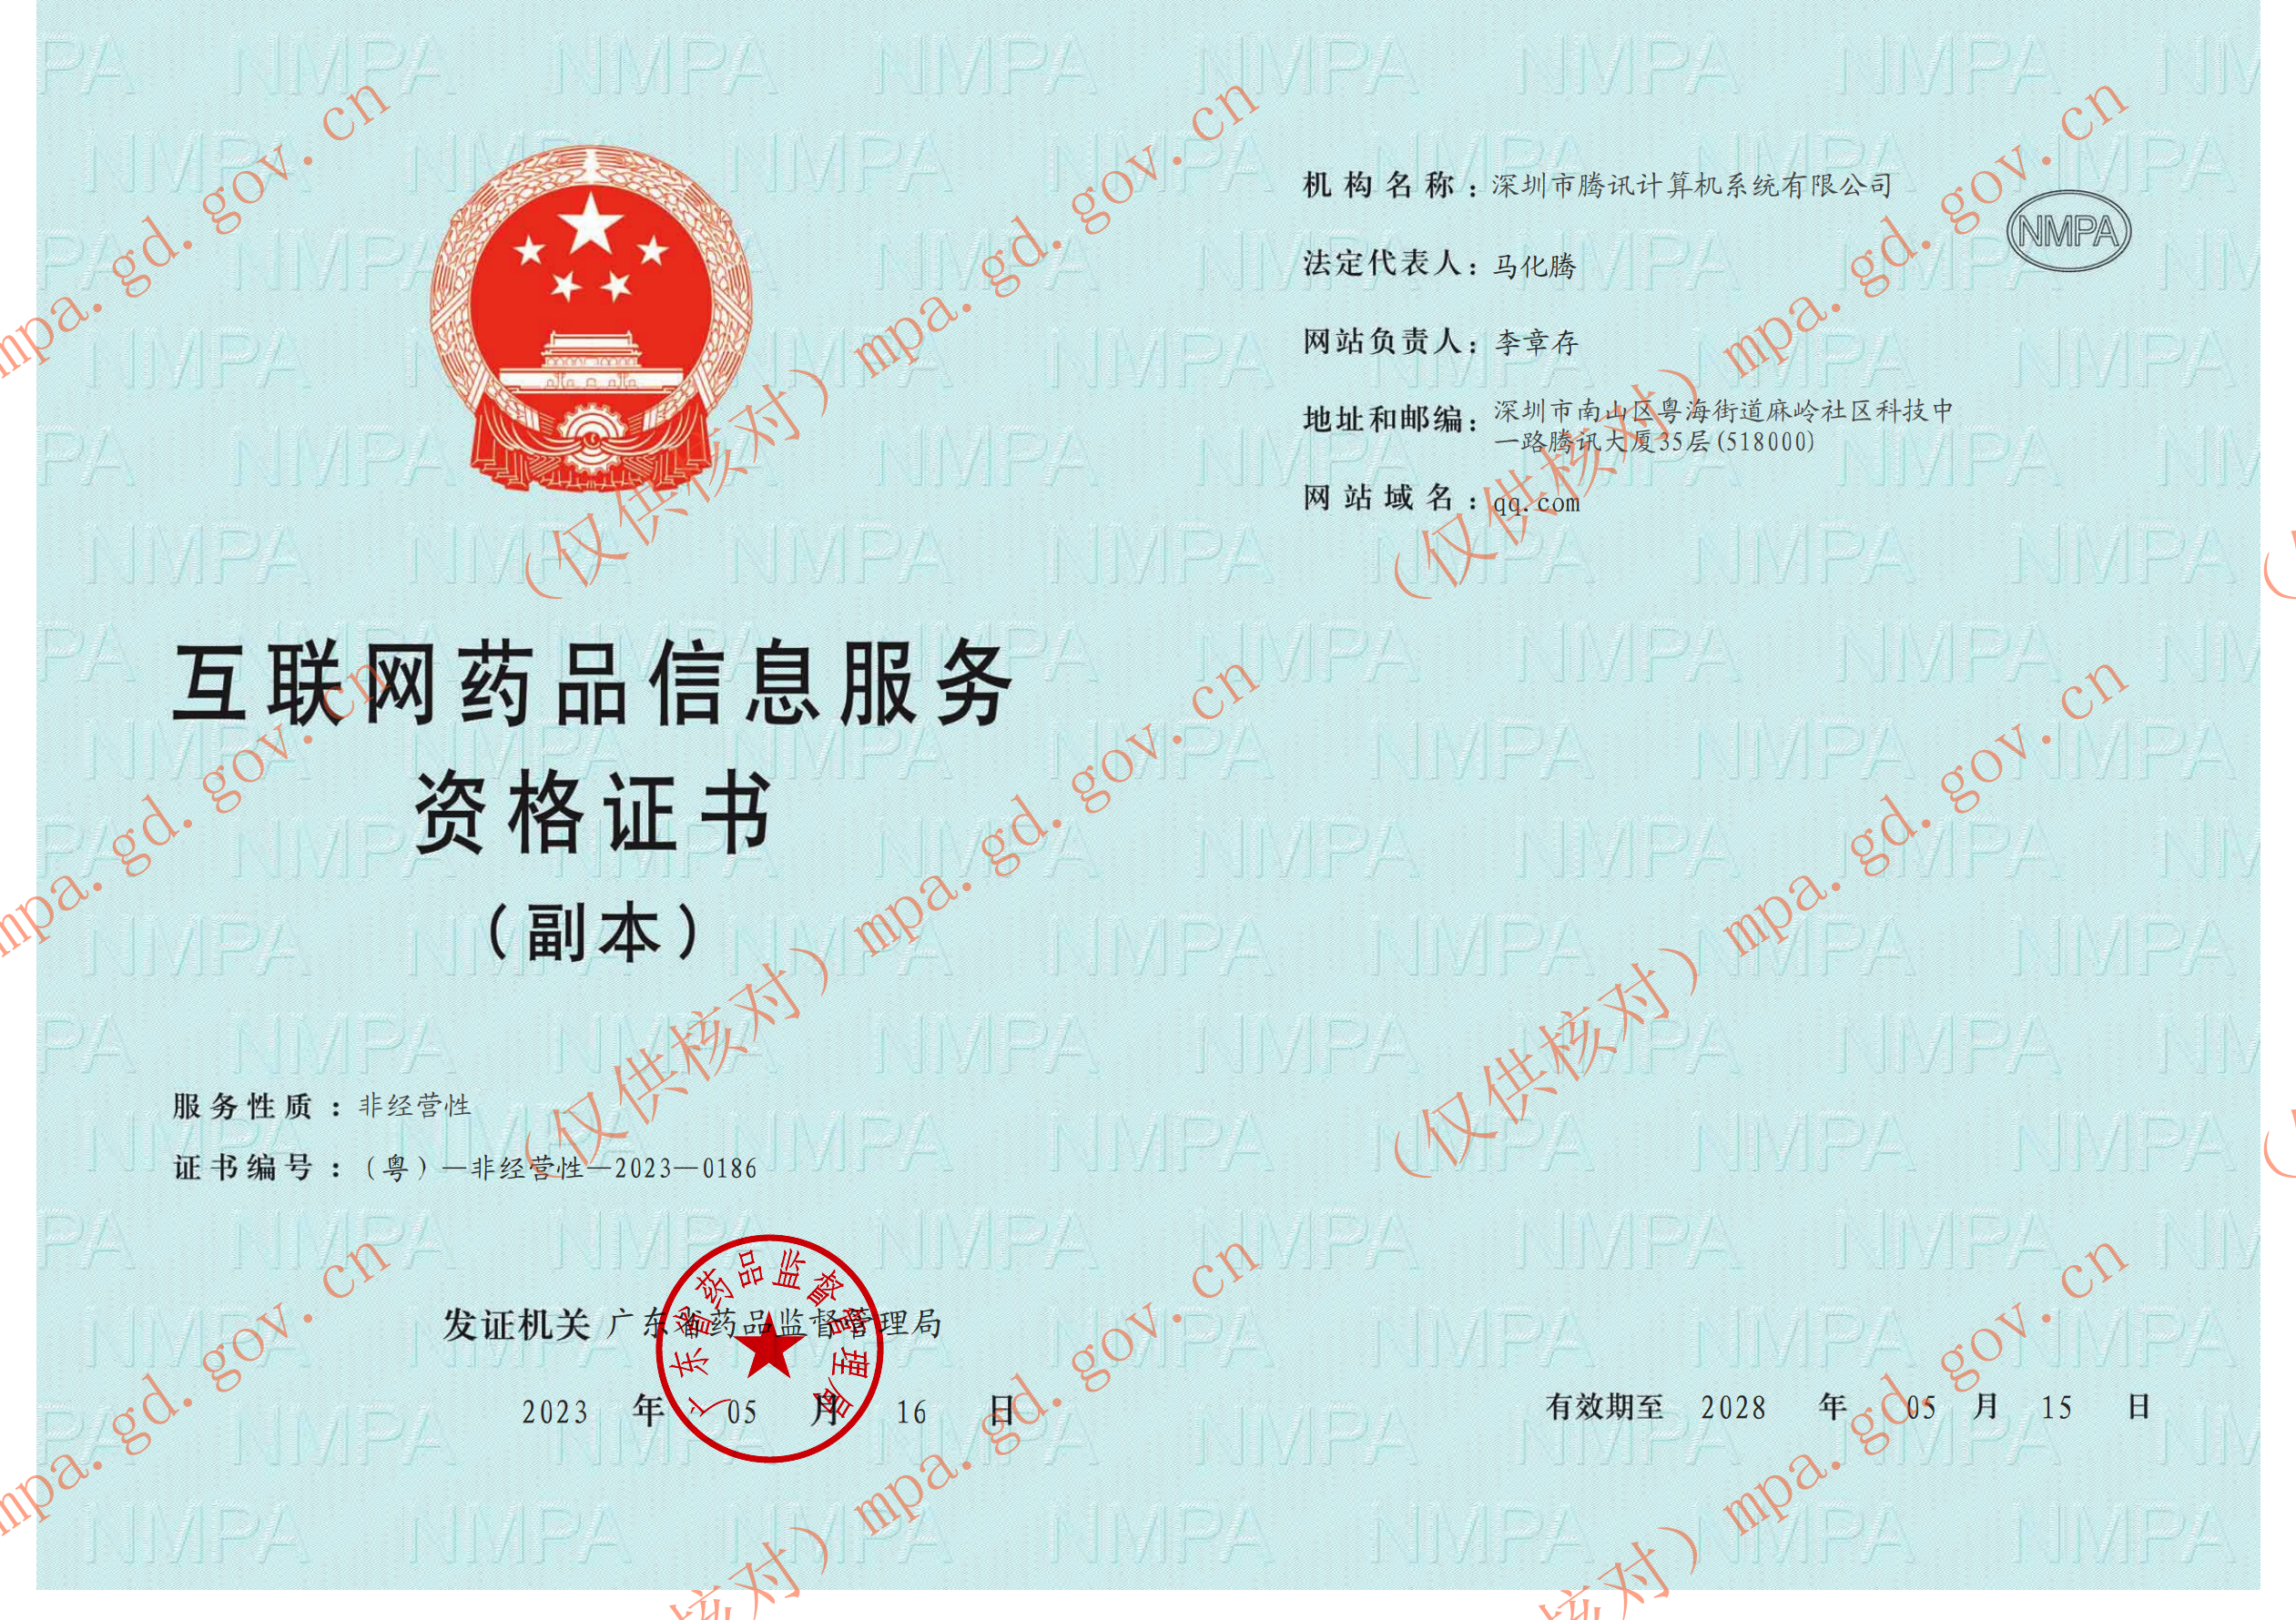  Qualification Certificate of Internet Drug Information Service